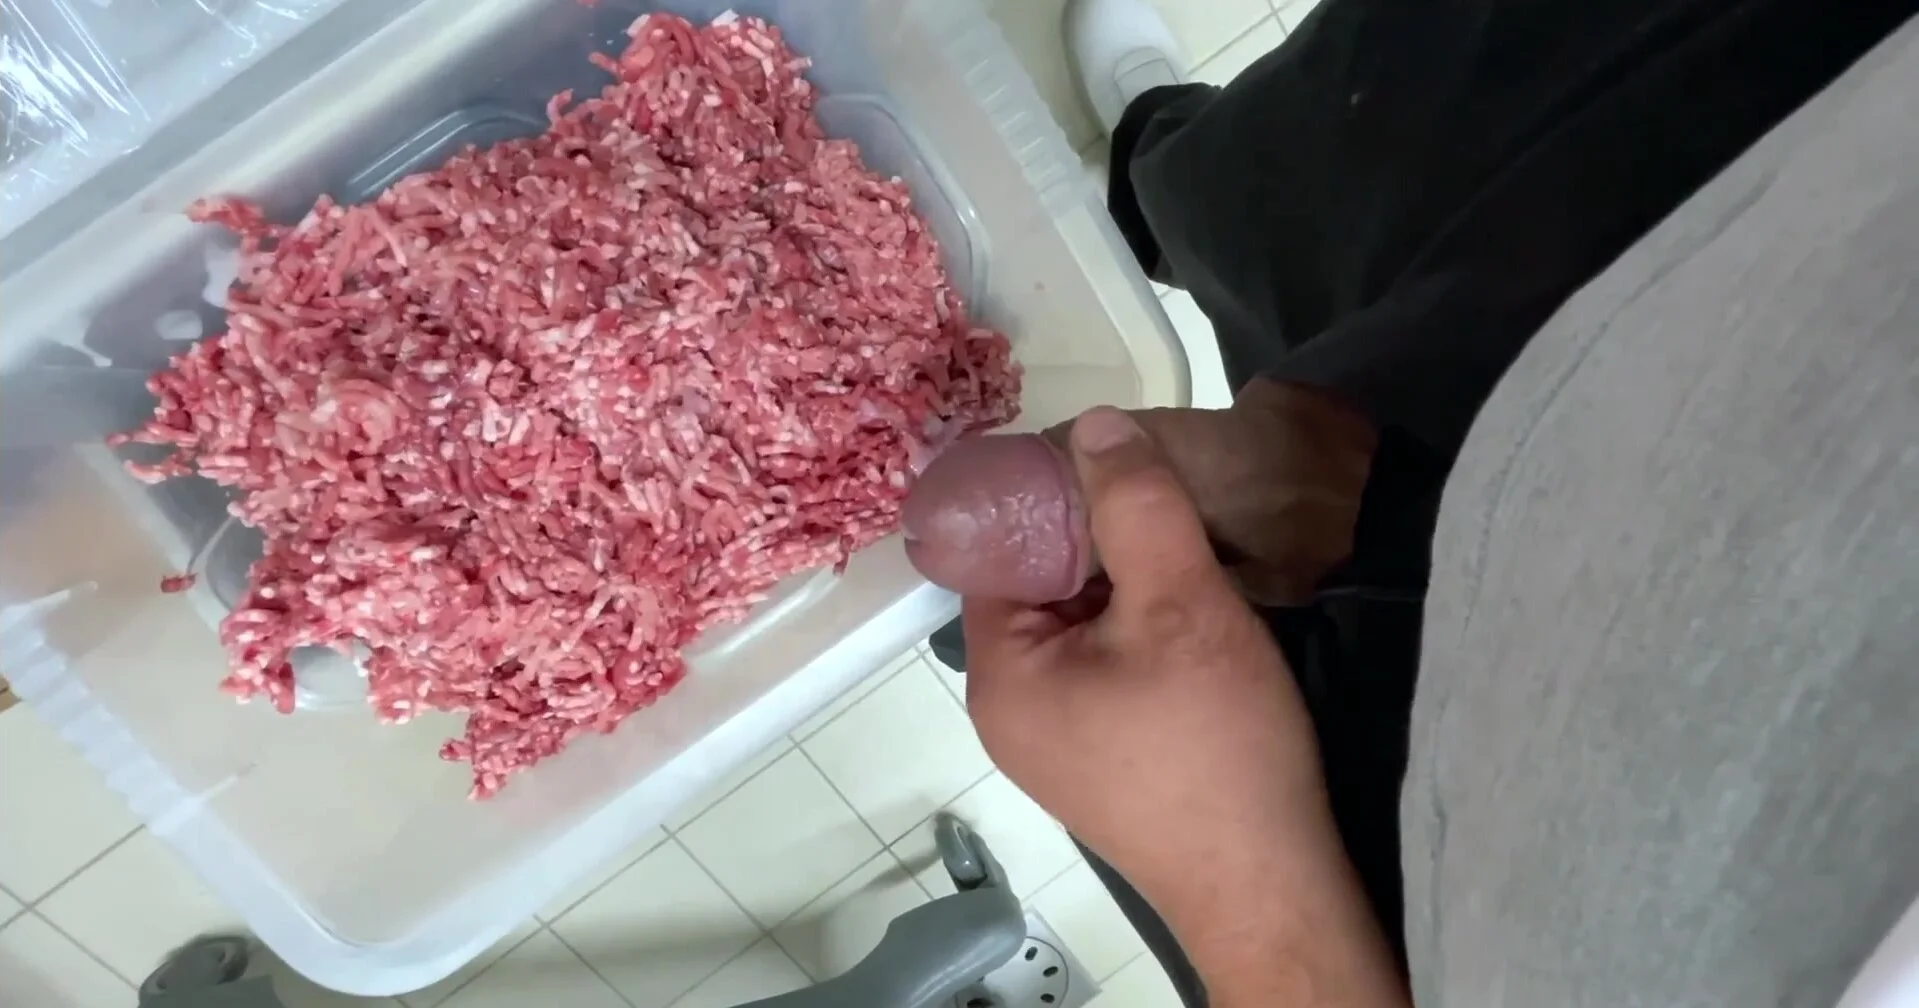 Beef Hq Porn - Food Cum & Piss: Butcher Cum in Meat - ThisVid.com